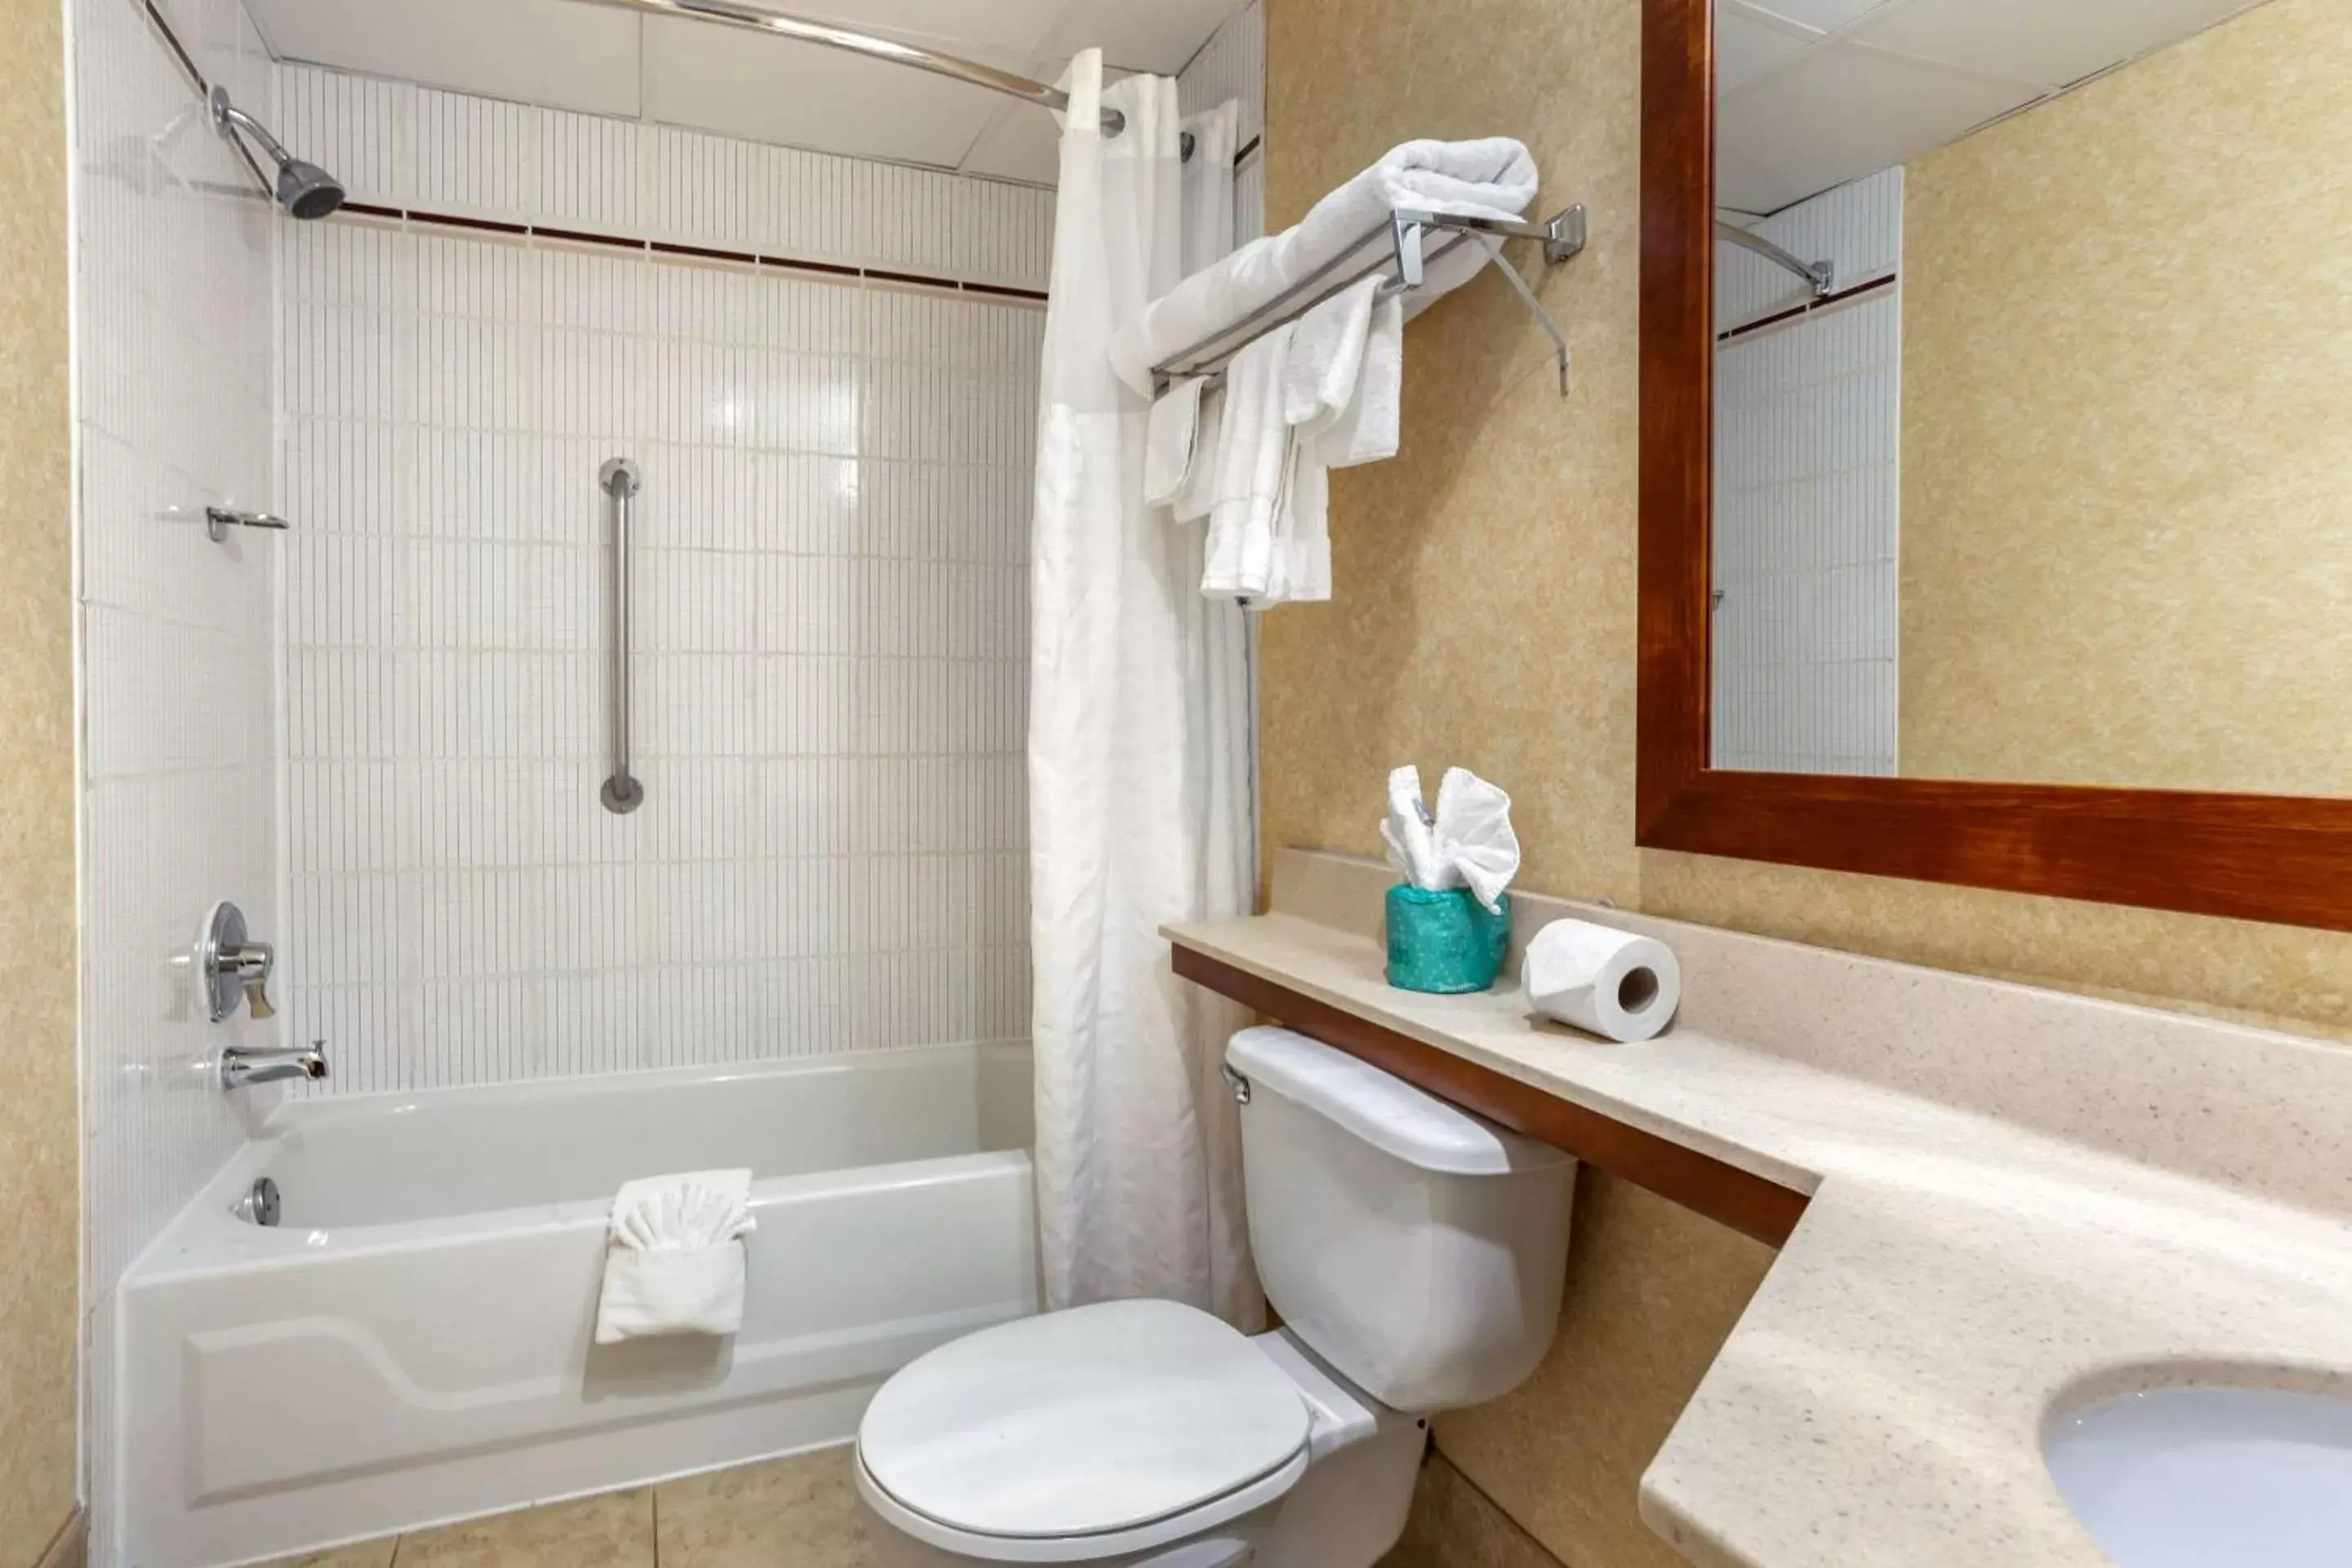 Bedroom, Bathroom in Comfort Suites Oakbrook Terrace near Oakbrook Center